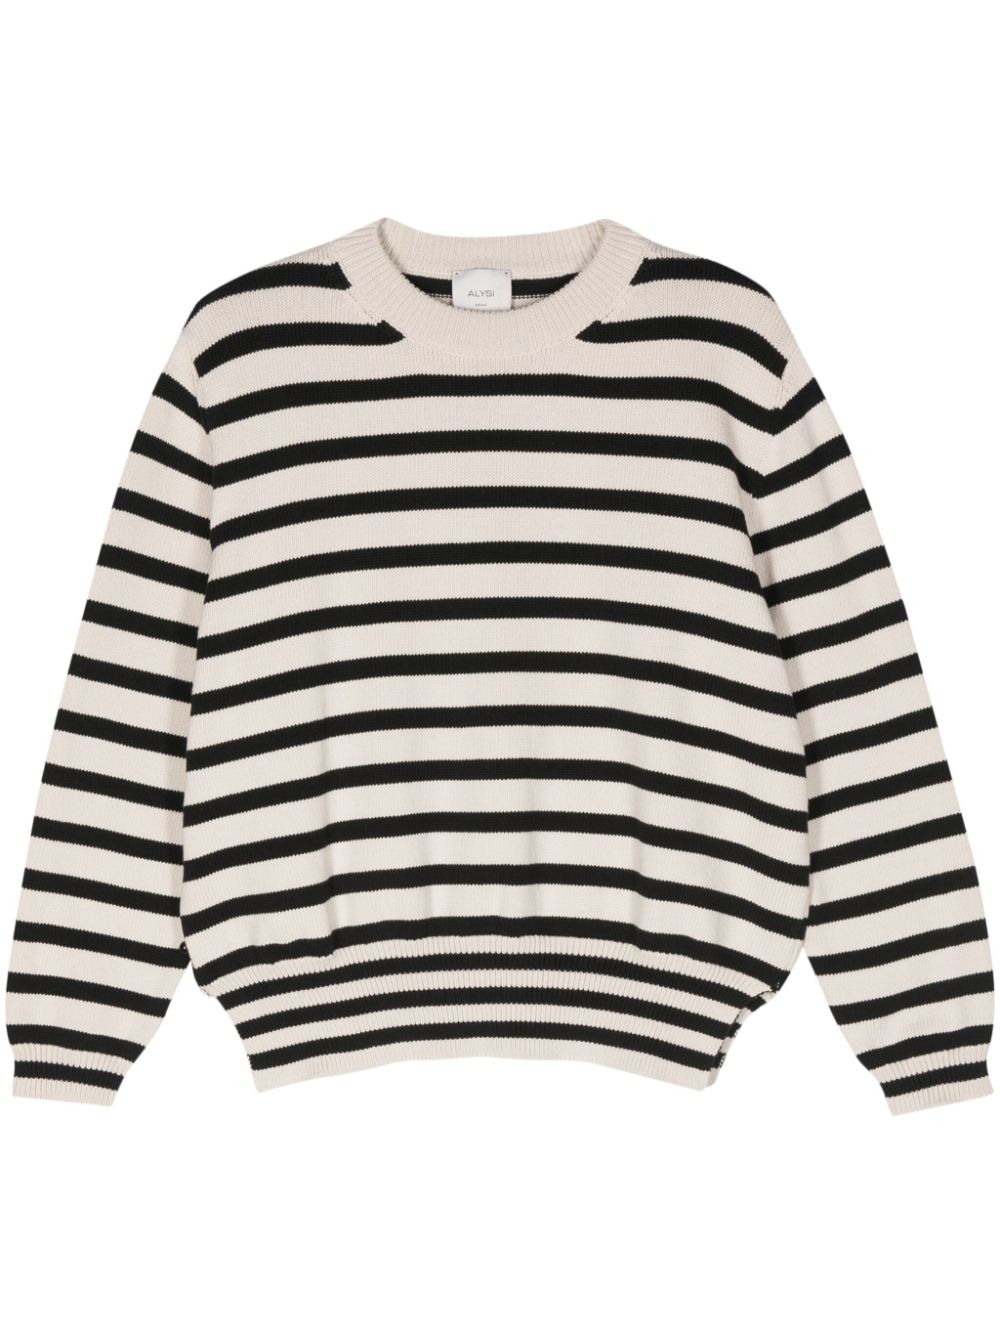 Alysi ALYSI- Striped Sweater